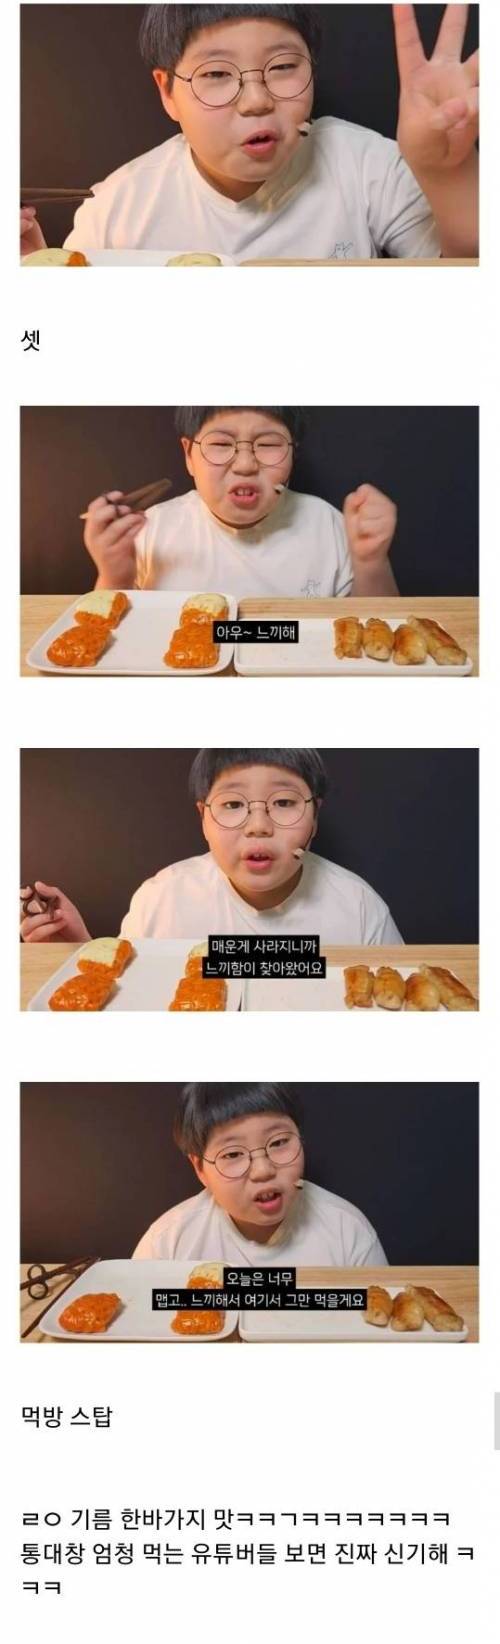 대창+불닭쌈 먹방한 초딩이 느낀 대창 맛